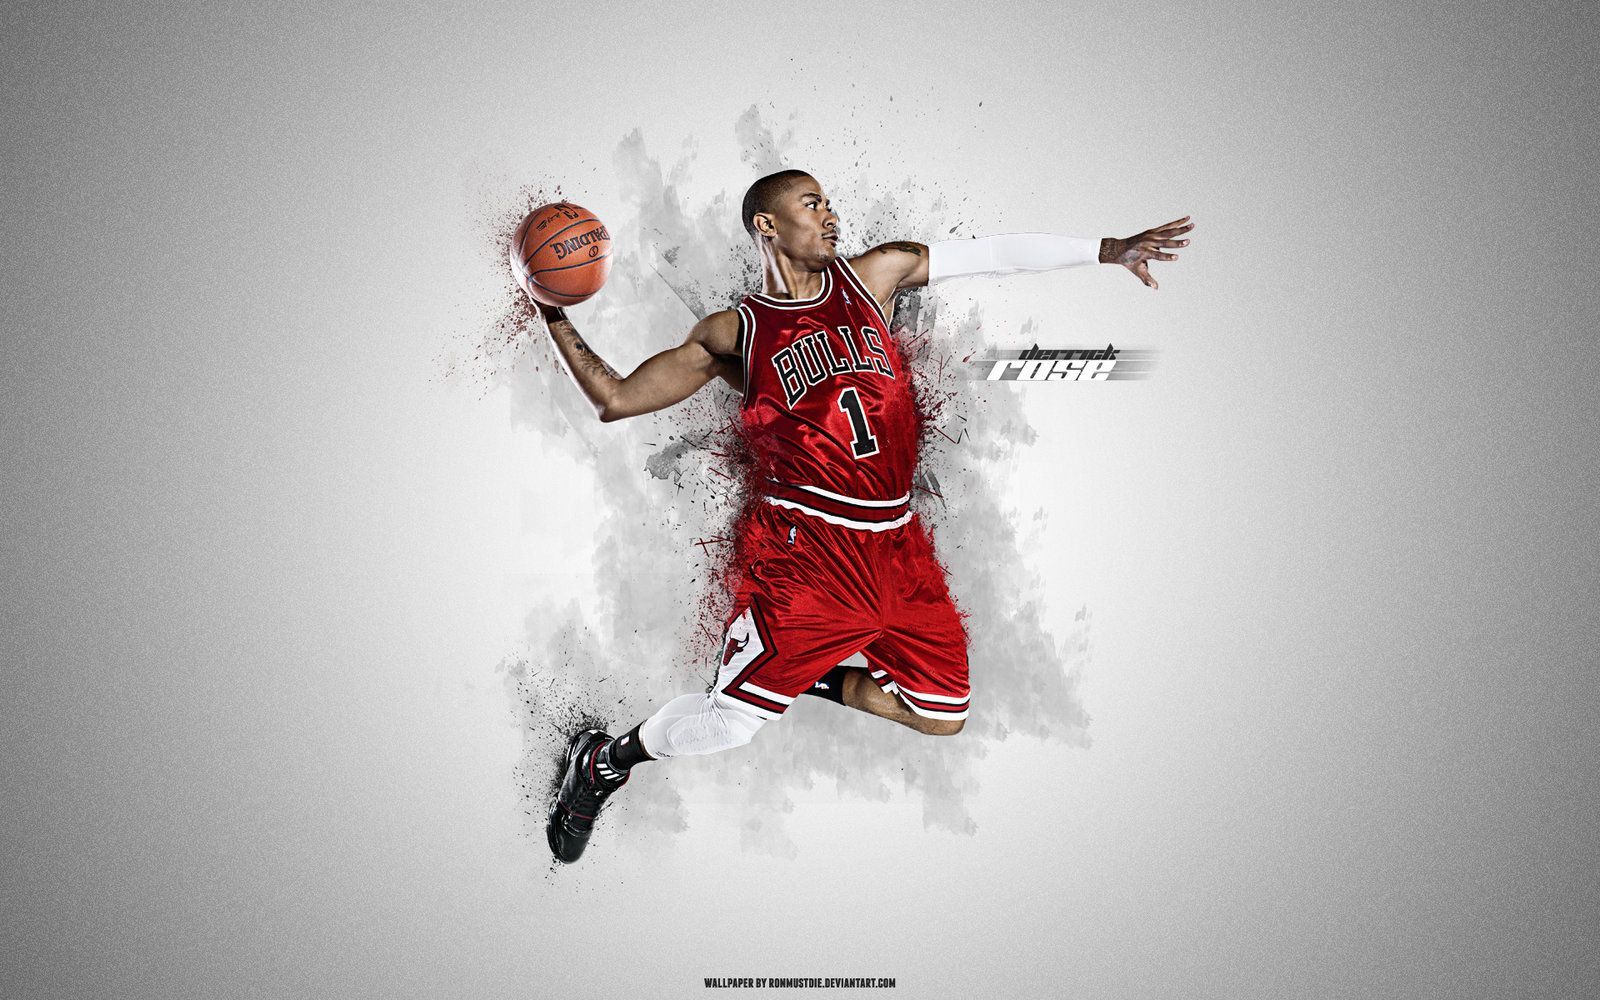 95+] NBA Player Wallpapers - WallpaperSafari